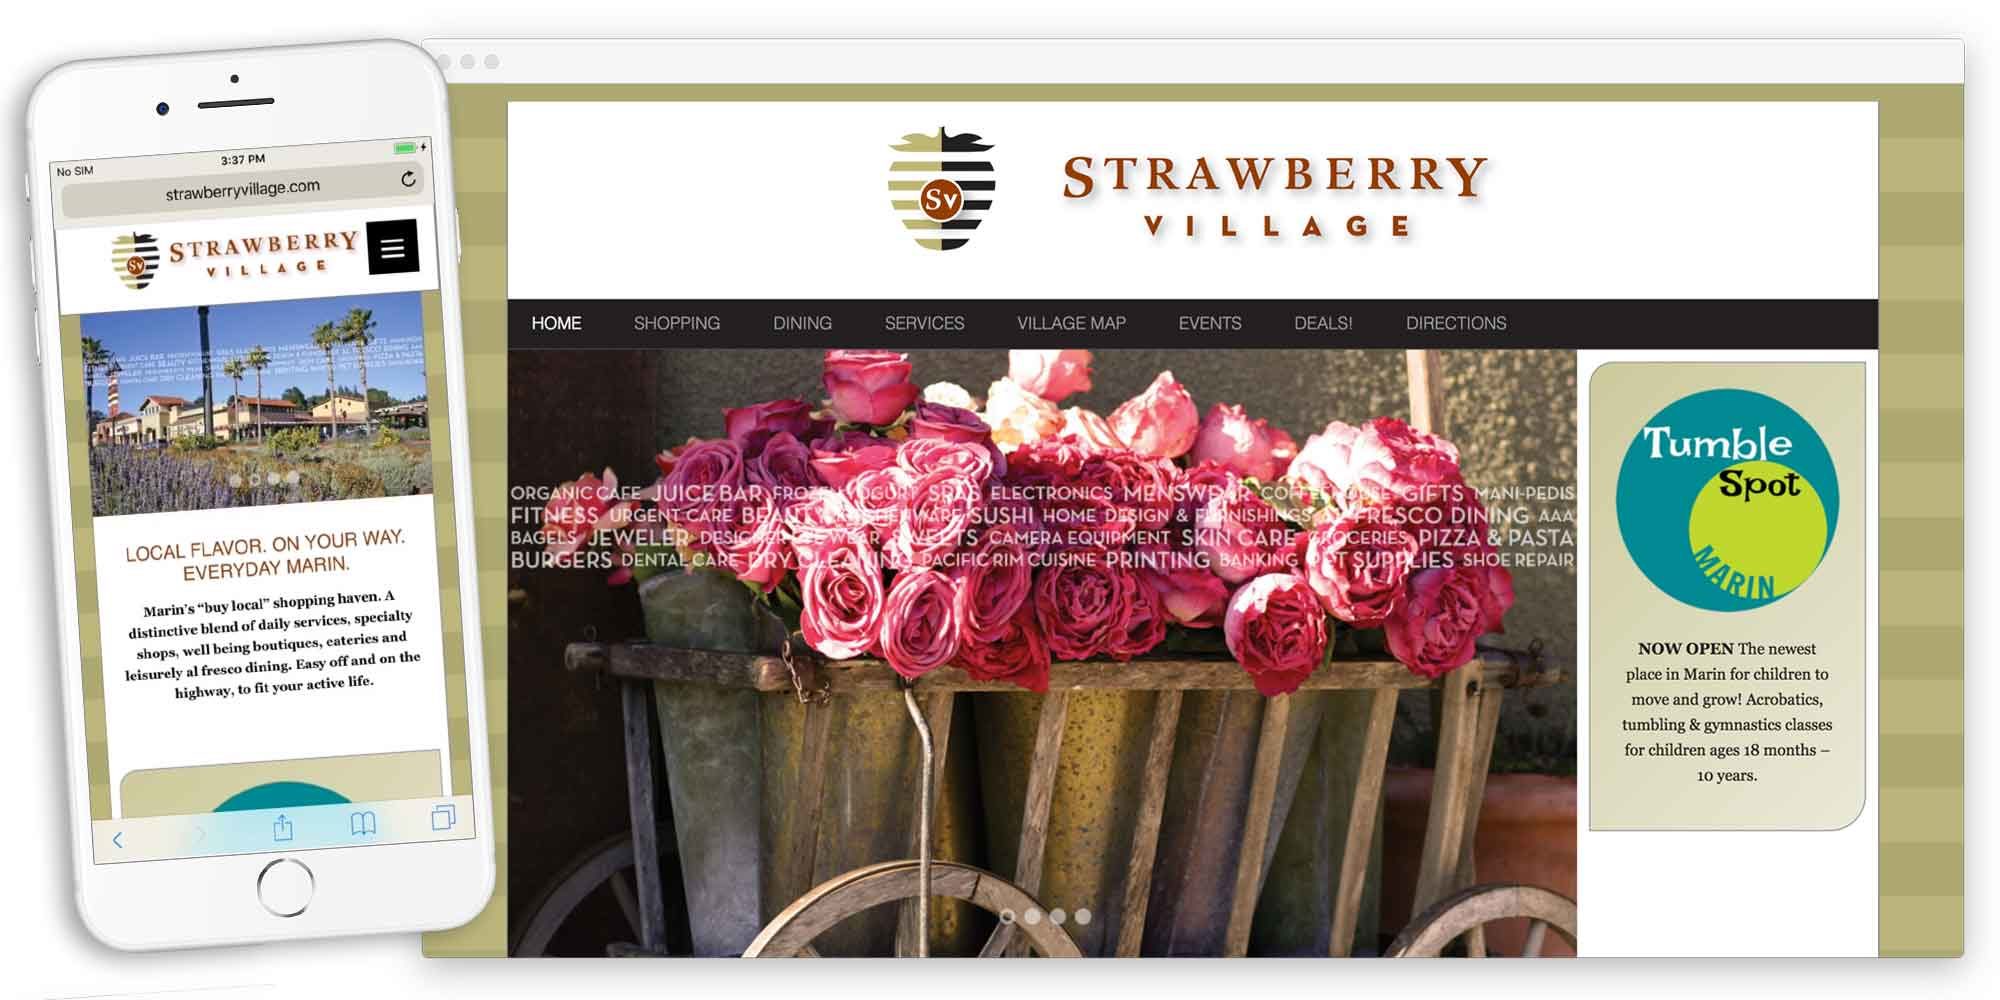 strawberry village website by lobstervine